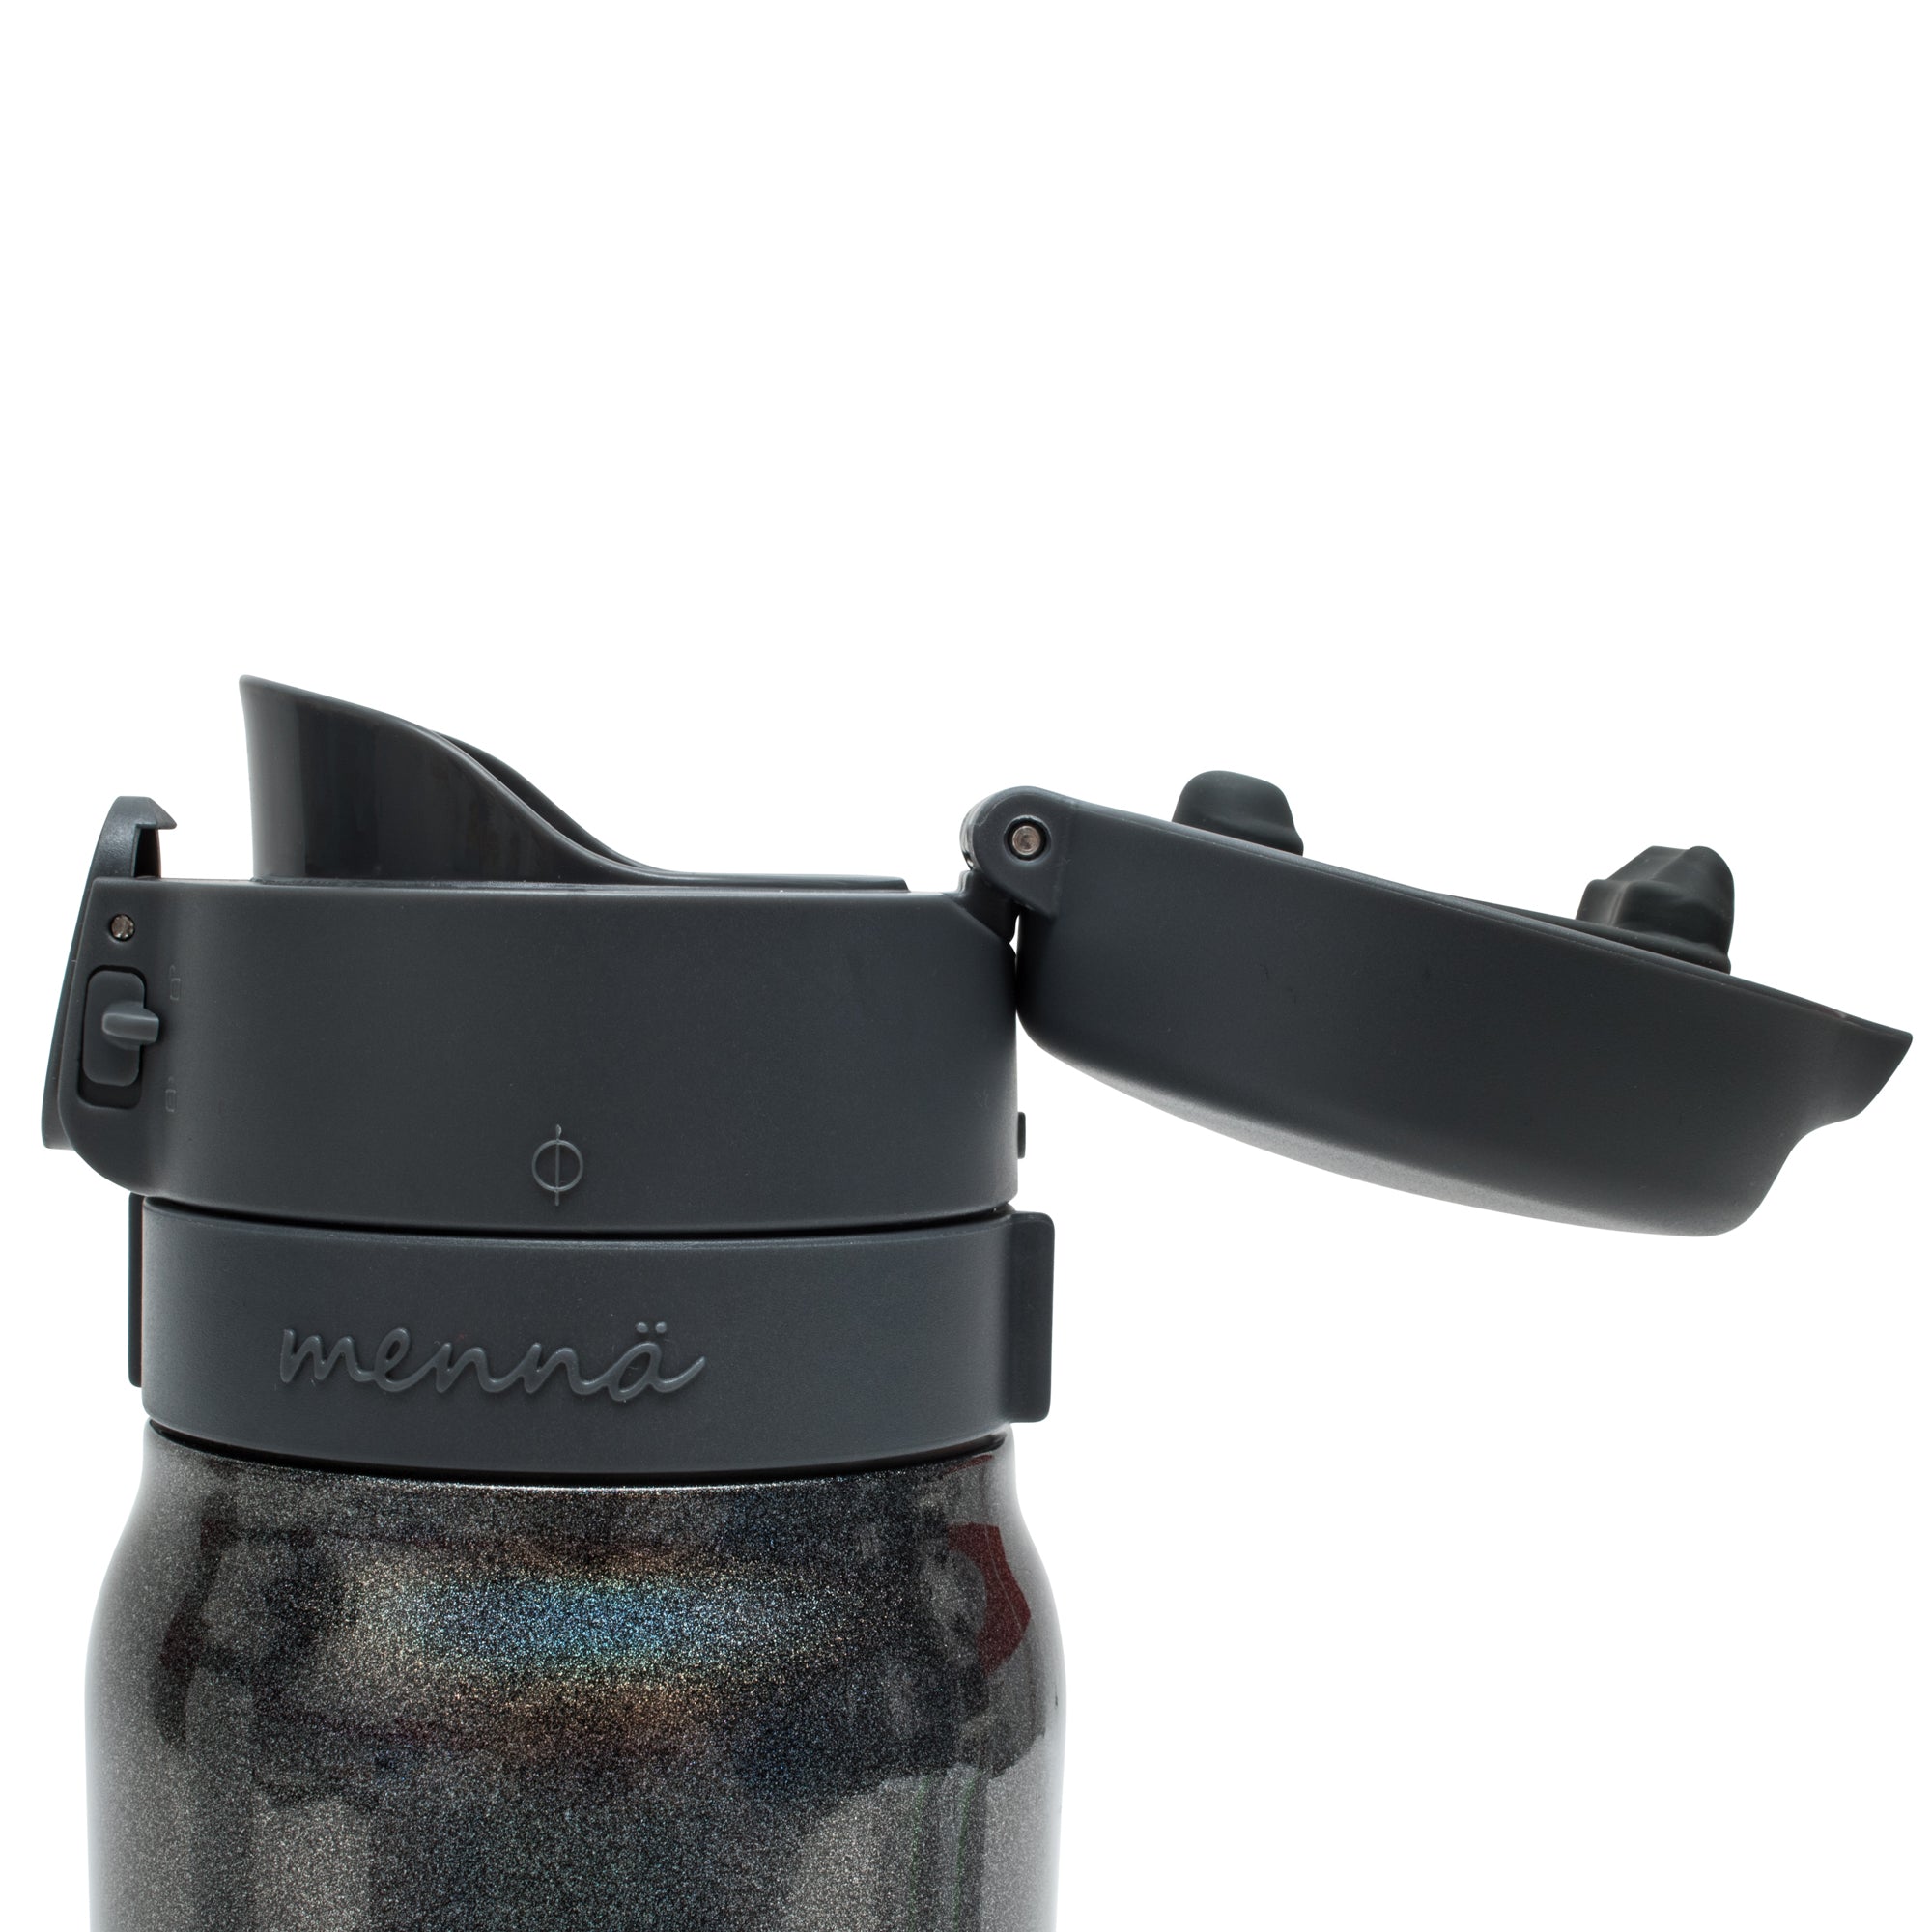 Best tea infuser travel mugs – Snarky Nomad